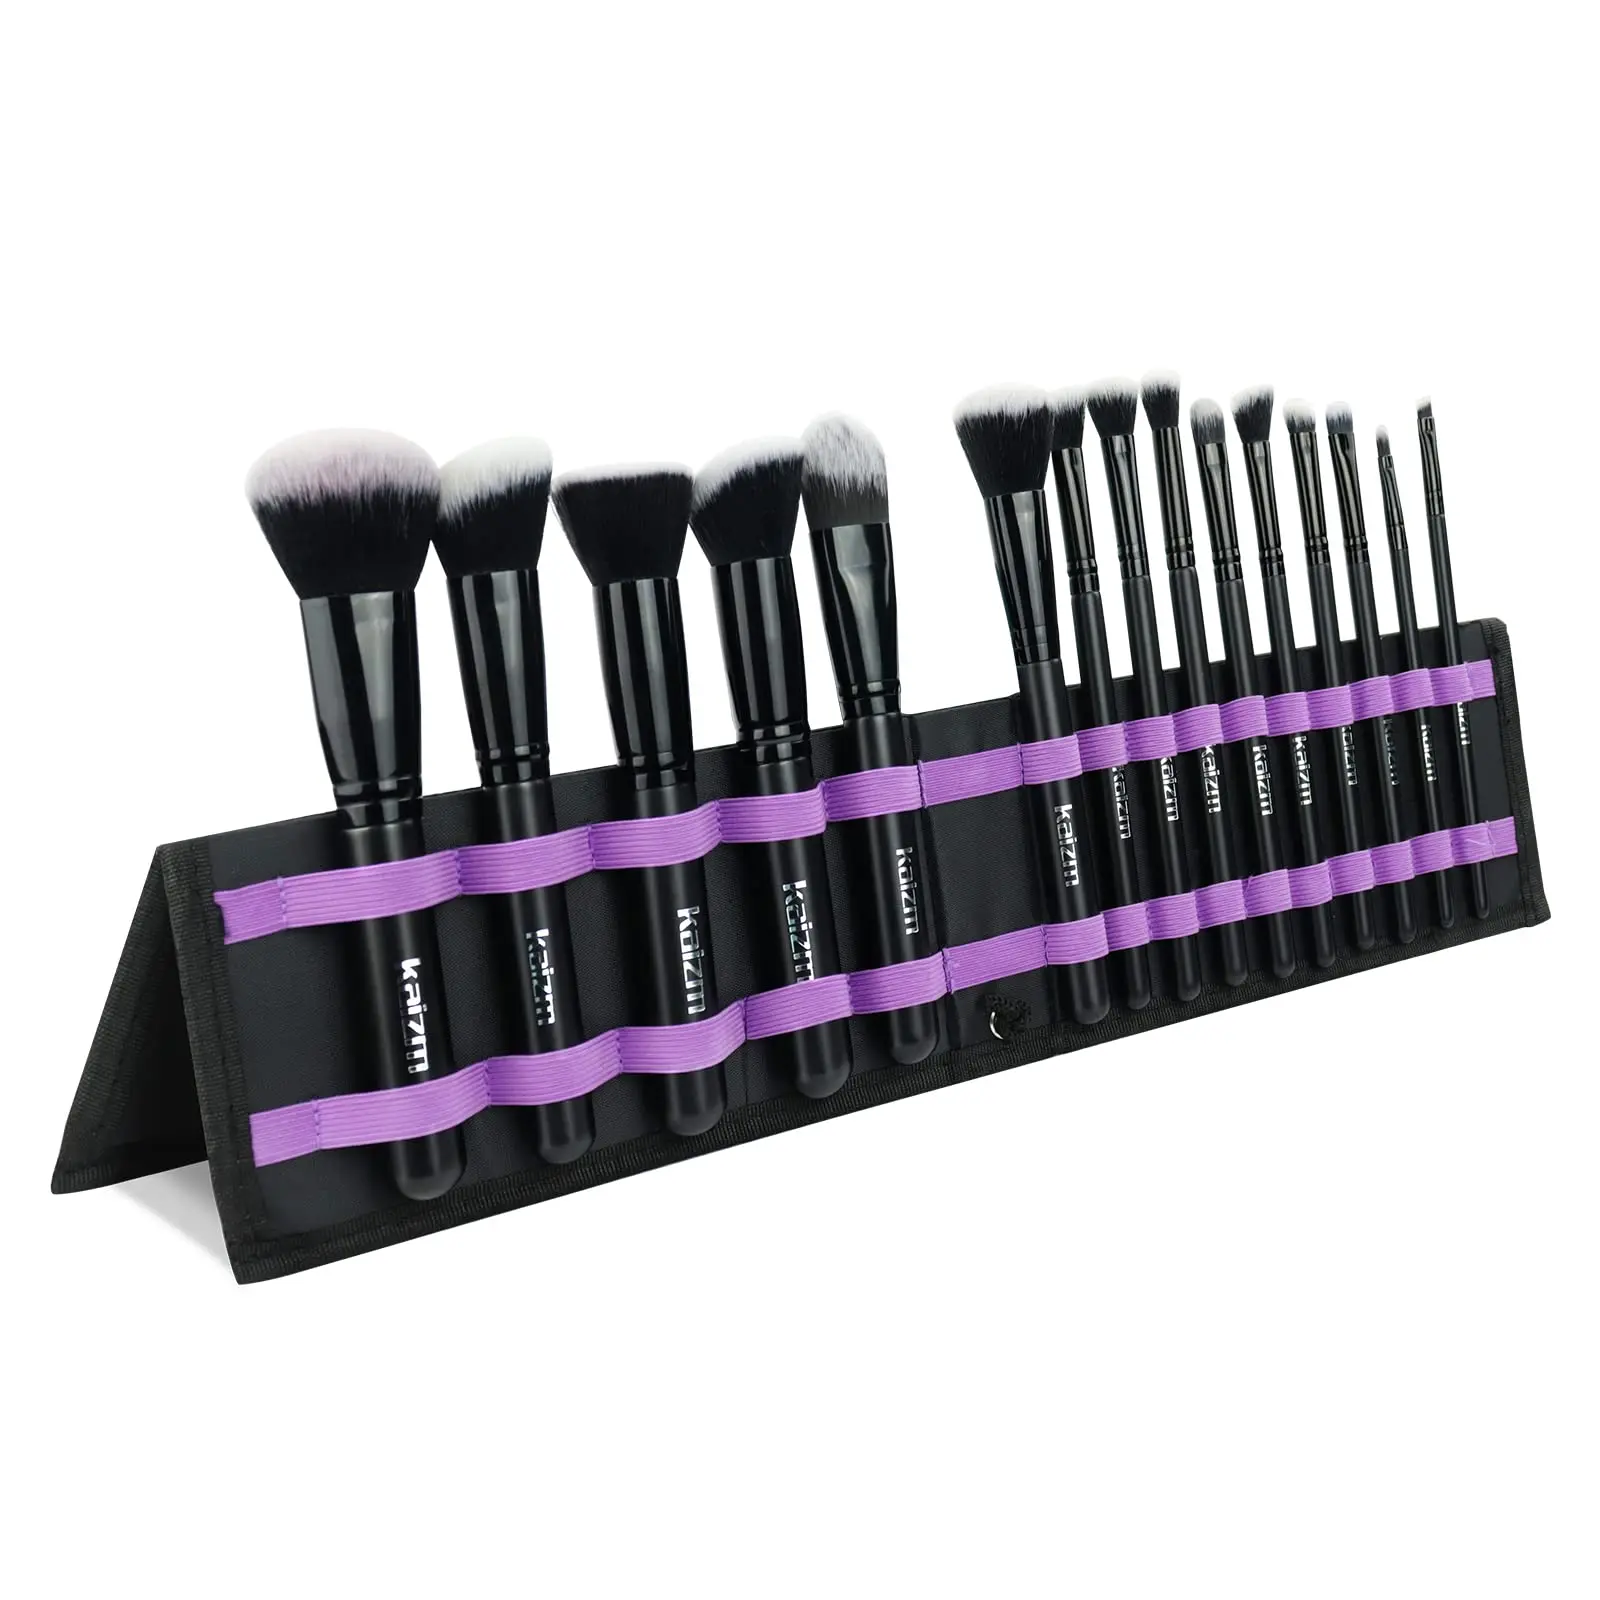 

Cosmetic Makeup Brushes Set Portable Foundation Brush 15pcs Black Kabuki Eyeshadow Concealer Lash Blush Brush with Case